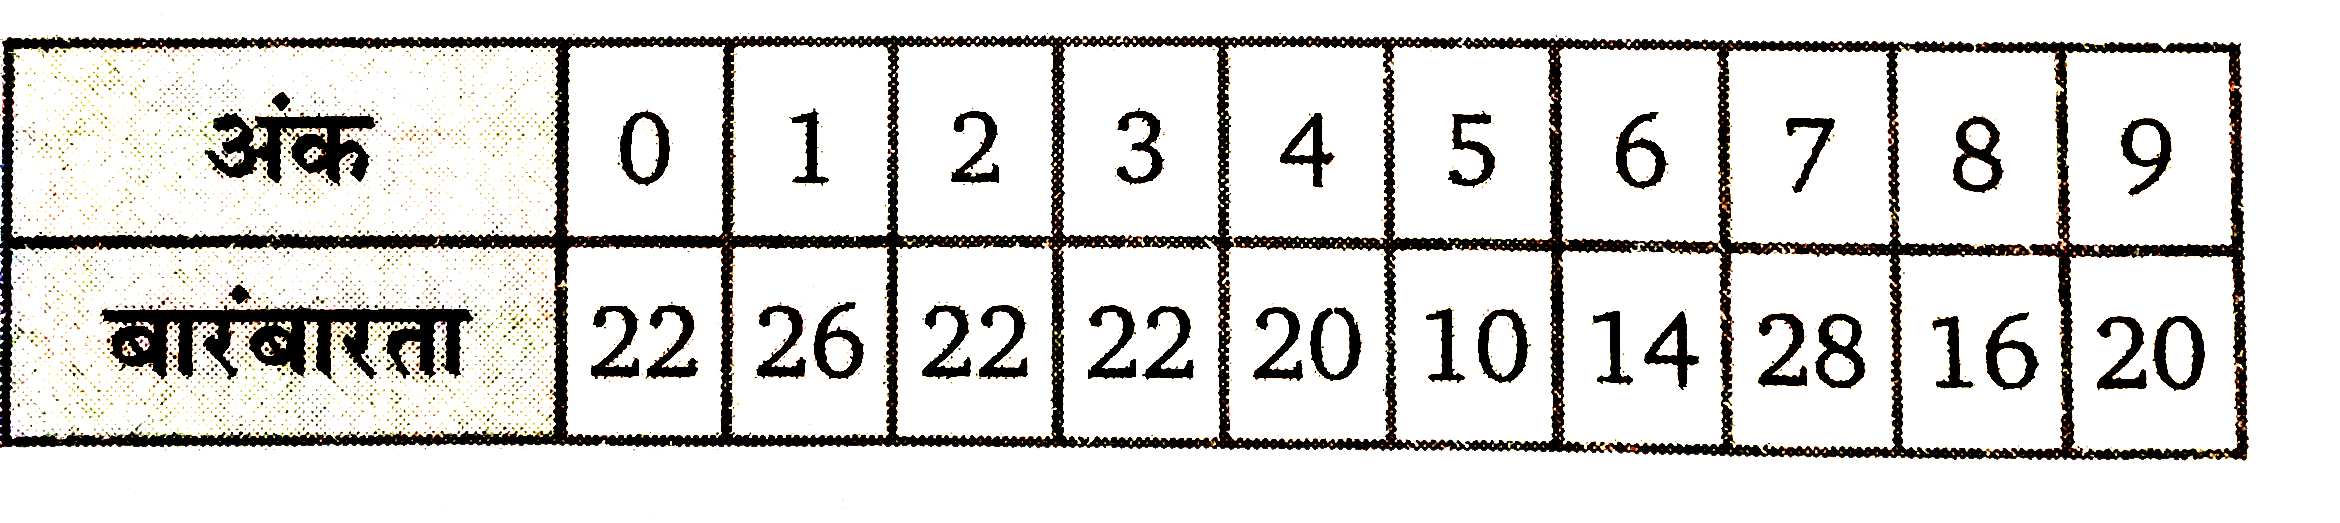 टेलीफोन डायरेक्ट्री के एक पन्ने पर 200 टेलीफोन नम्बर लिखे हैं उनमें से इकाई स्थान के अंक की बारम्बारता निम्न तालिका में दी गयी है।      एक संख्या यादृच्छया चुनी जाती है। प्रायिकता ज्ञात कीजिए। इकाई स्थान पर संख्या (i) 6 (ii) 3 का गुणक (अशून्य) है (iii) एक अशून्य सम संख्या है (iv) एक विषम संख्या है